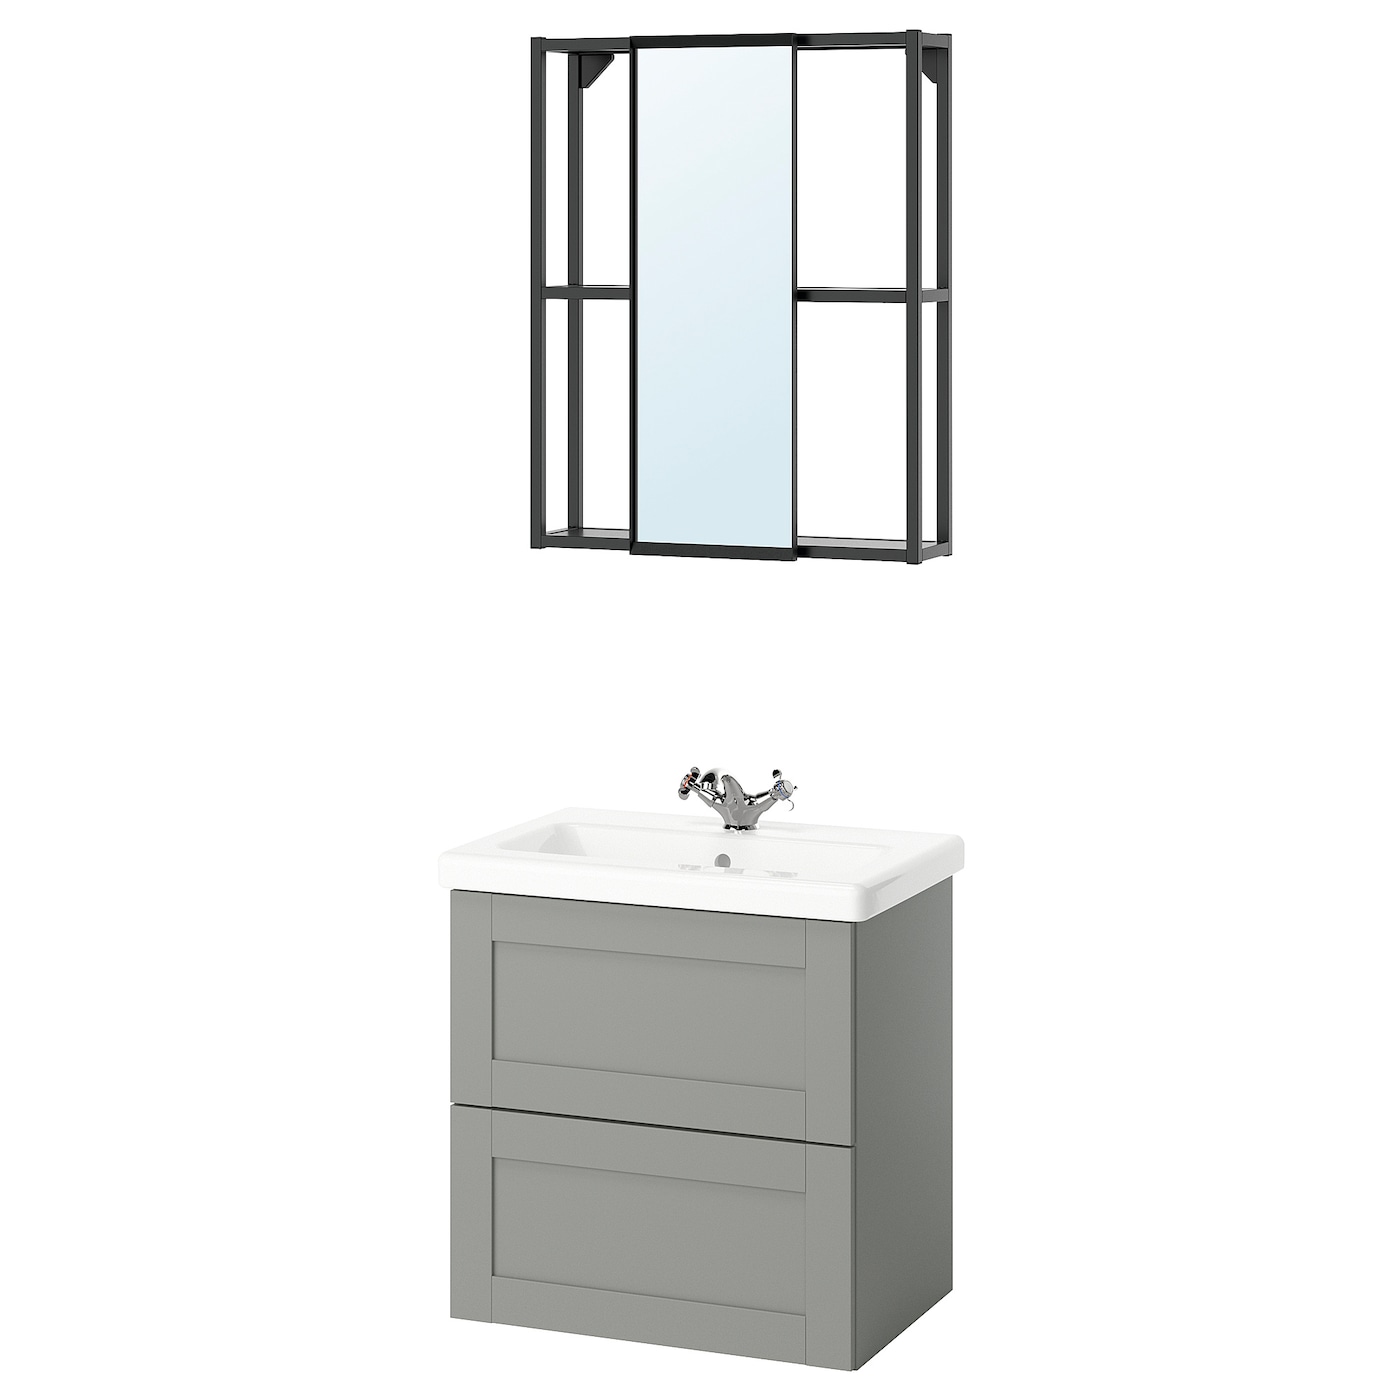 Комбинация для ванной - IKEA ENHET, 64х43х65 см, серый/антрацит, ЭНХЕТ ИКЕА